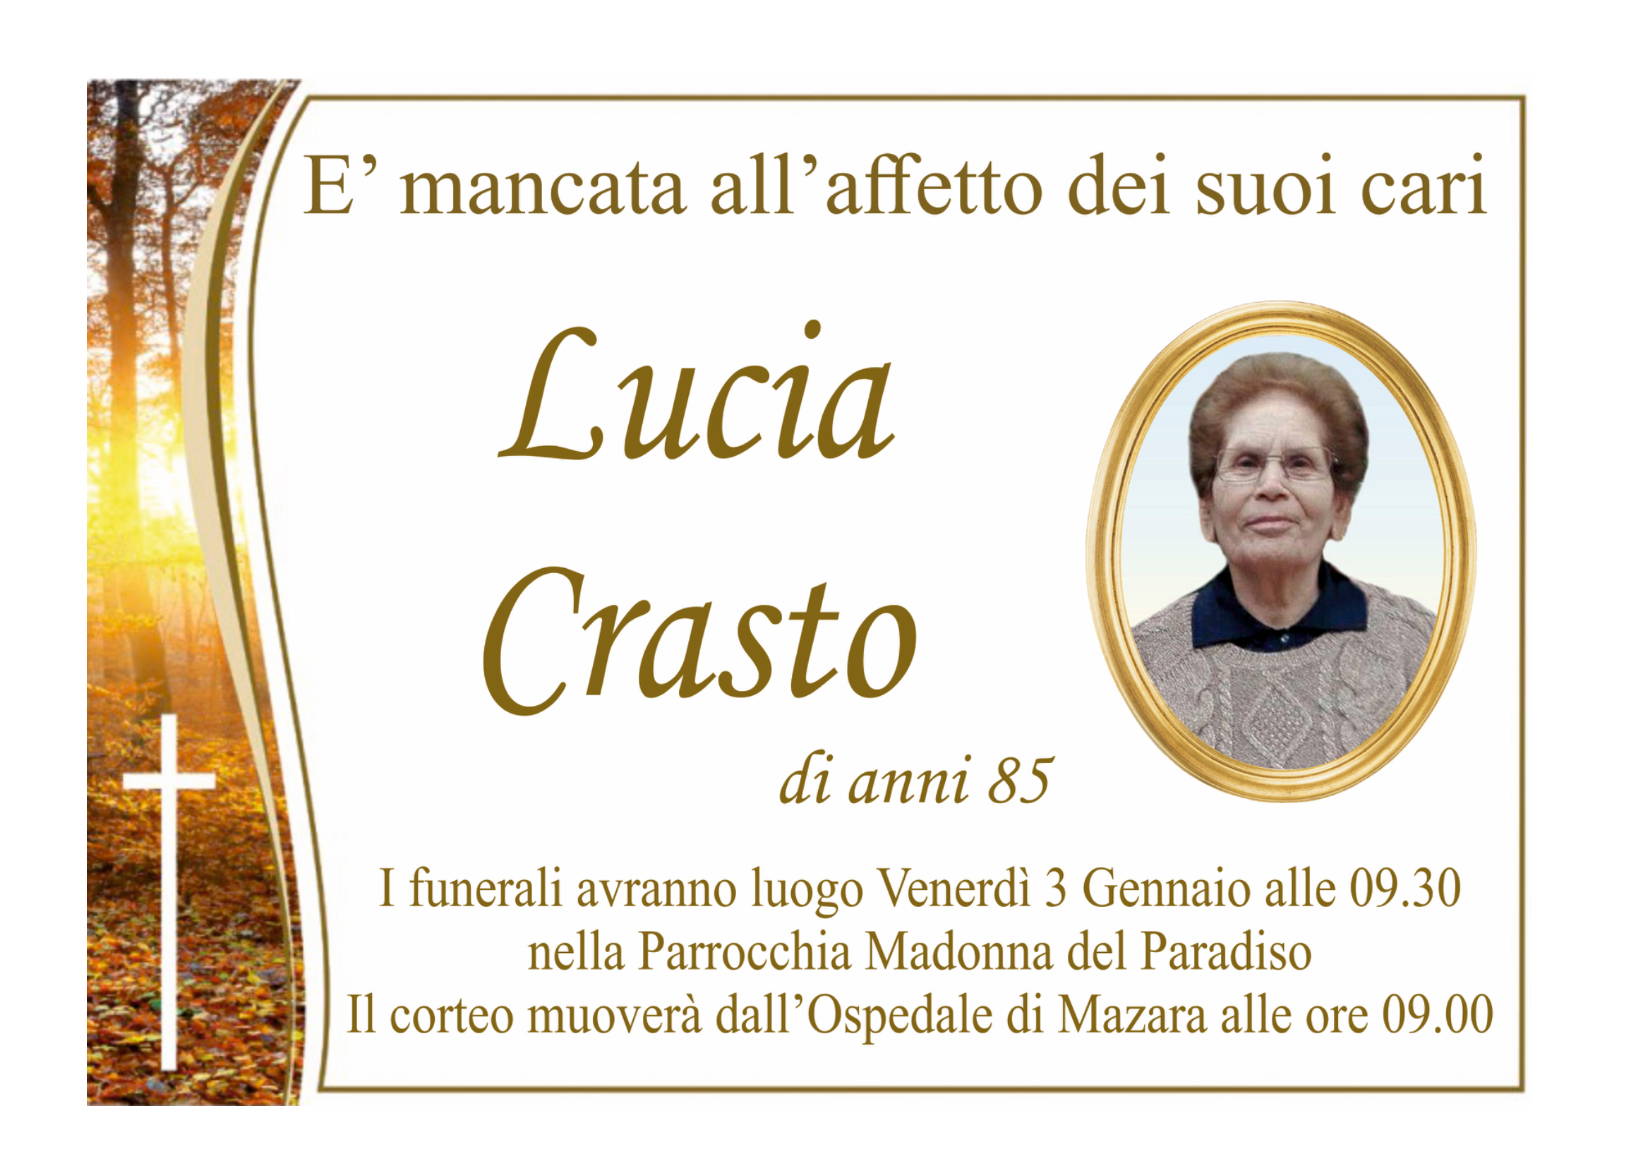 Lucia Crasto